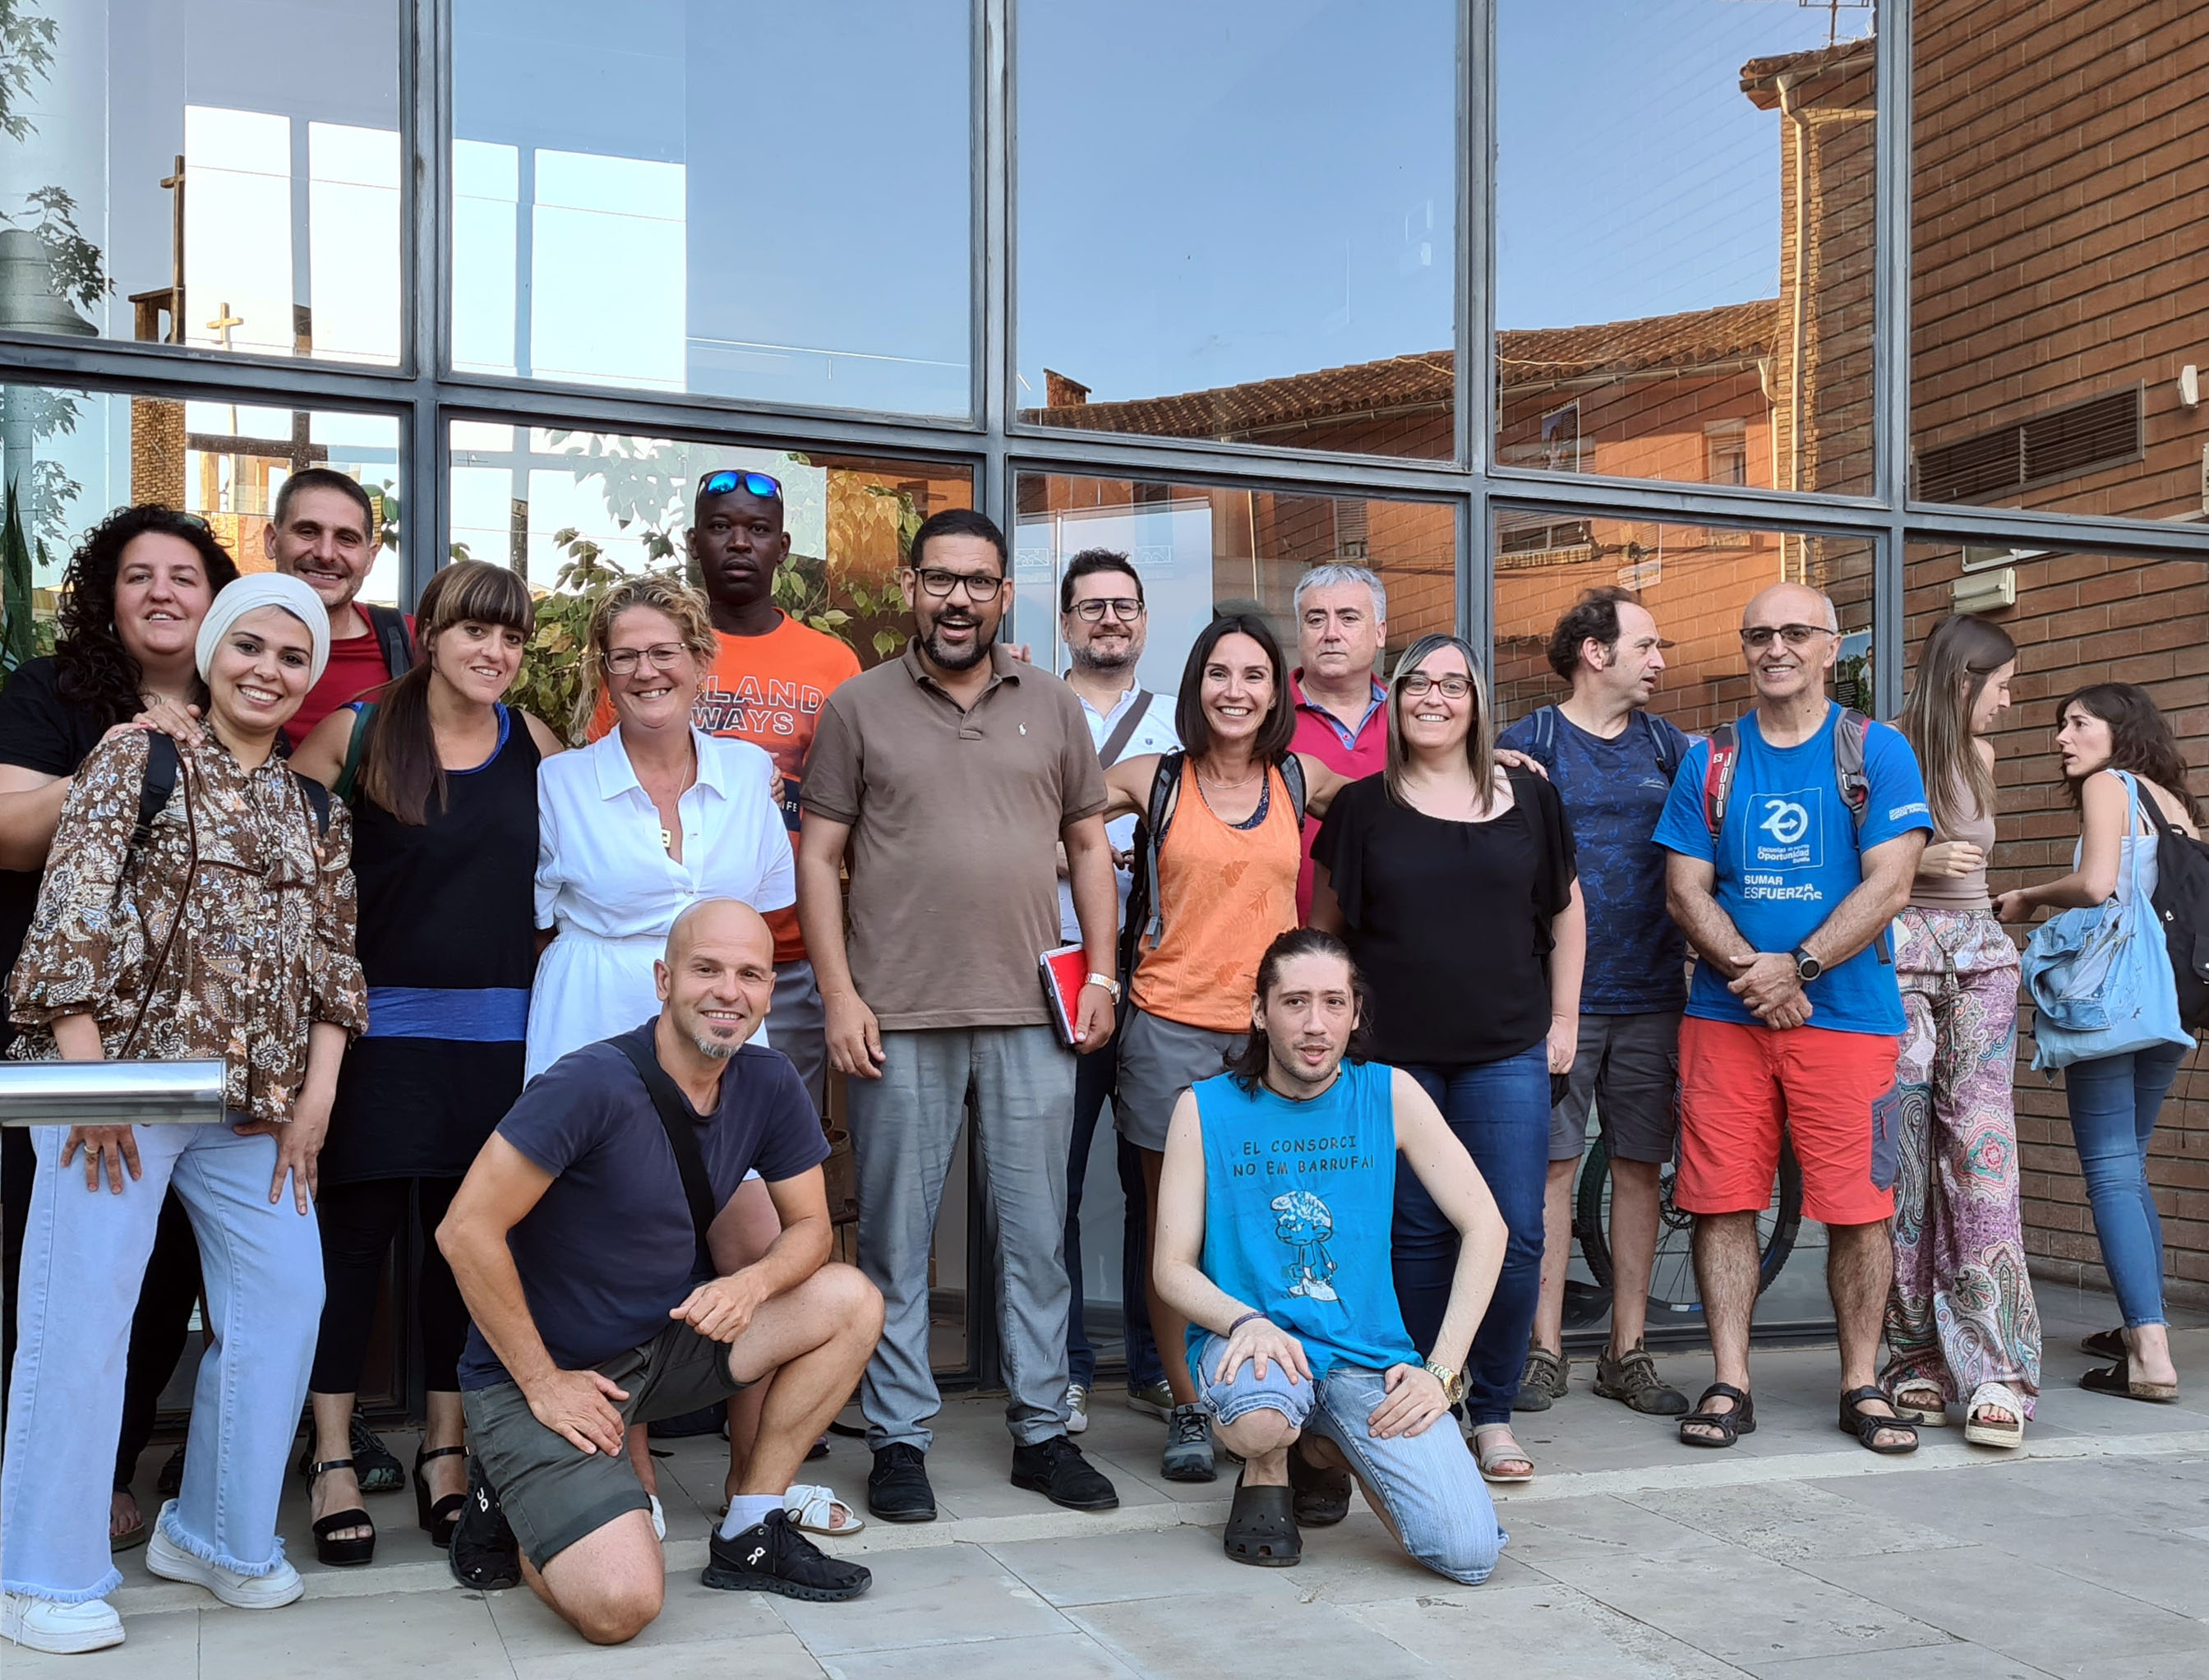 Primera assemblea de la Comunalitat de Lleida, al Centre Cívic de la Mariola, en què s'ha presentat el projecte comunitari i de transformació social “La Descomunal” a les entitats que l'integren